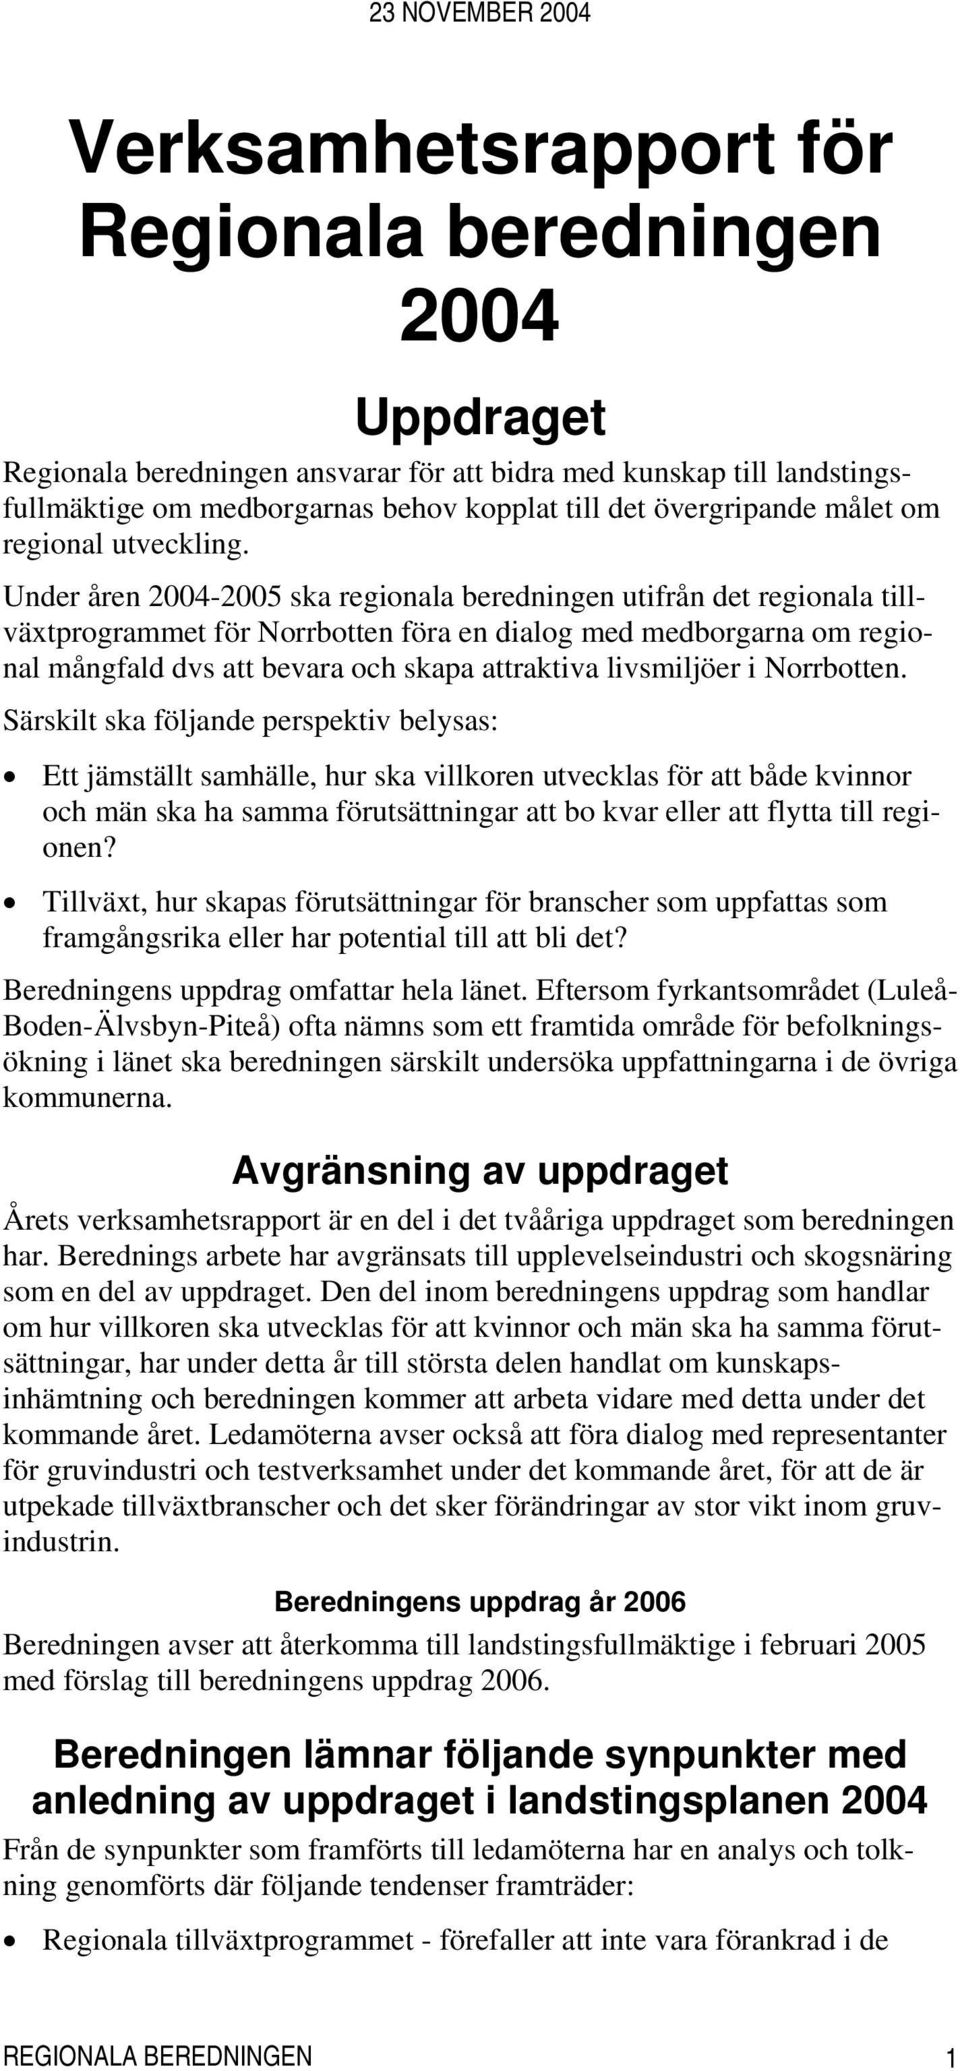 Under åren 2004-2005 ska regionala beredningen utifrån det regionala tillväxtprogrammet för Norrbotten föra en dialog med medborgarna om regional mångfald dvs att bevara och skapa attraktiva